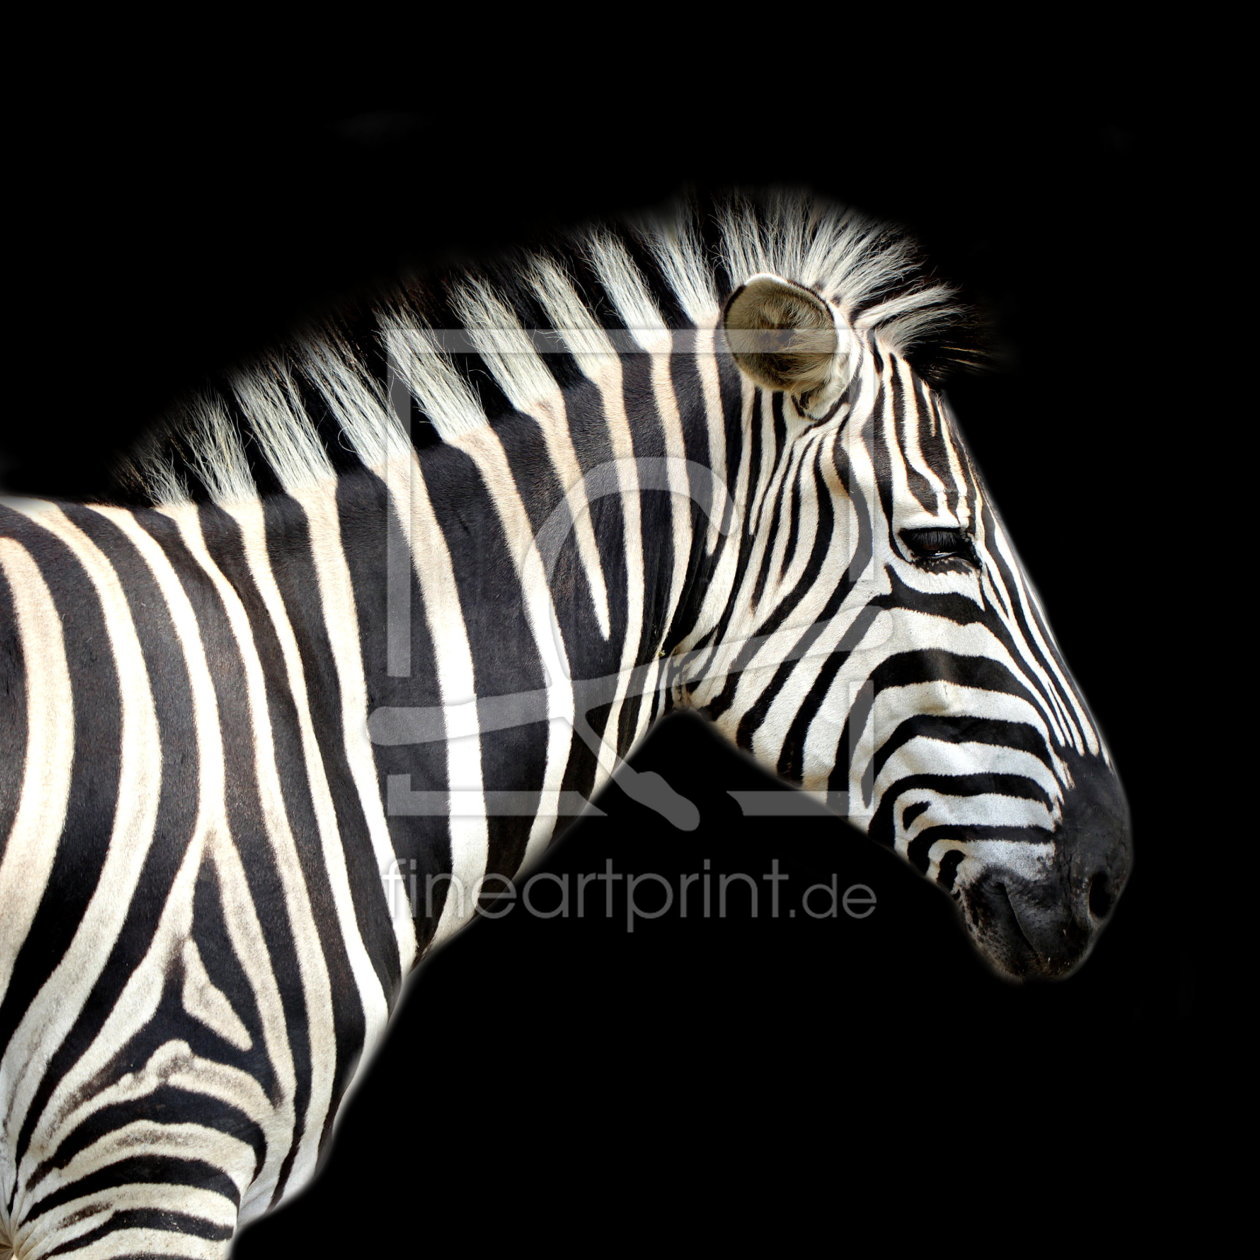 Bild-Nr.: 10664924 Zebra im Quadrat - Version zwei - Hintergrund schwarz erstellt von Heike Hultsch